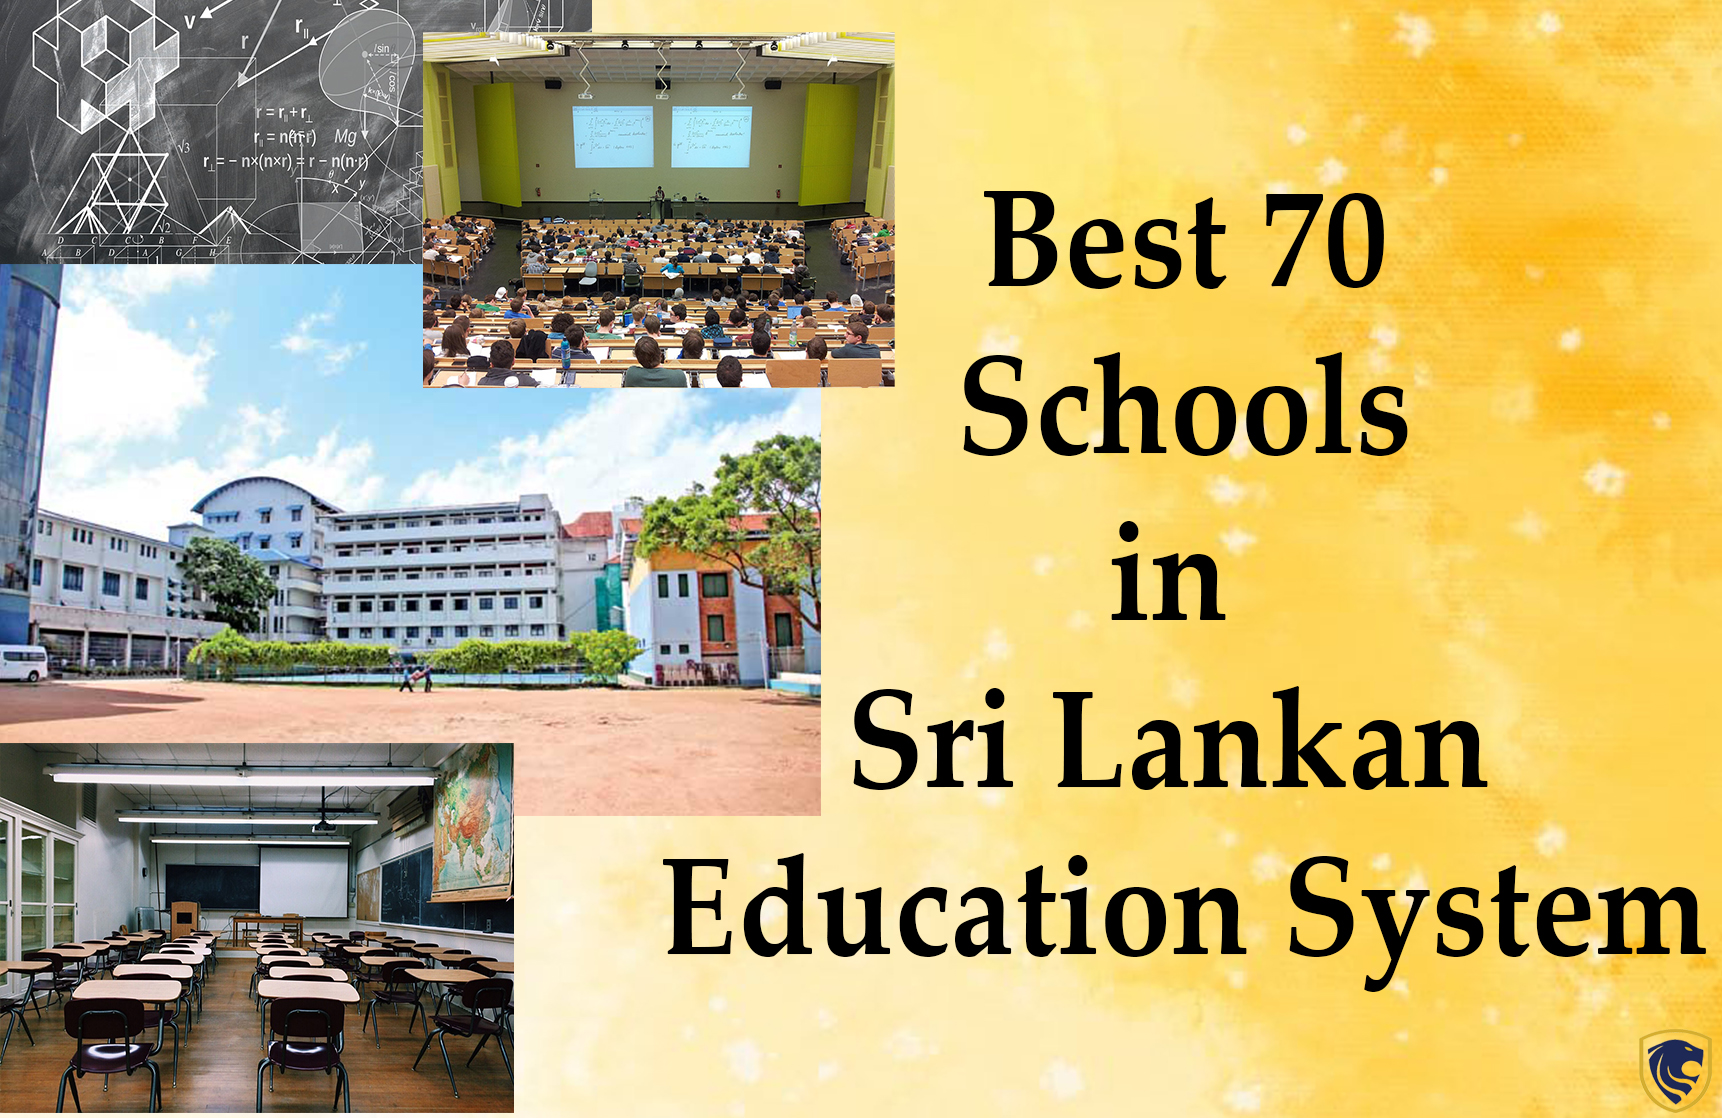 sri lanka education system essay